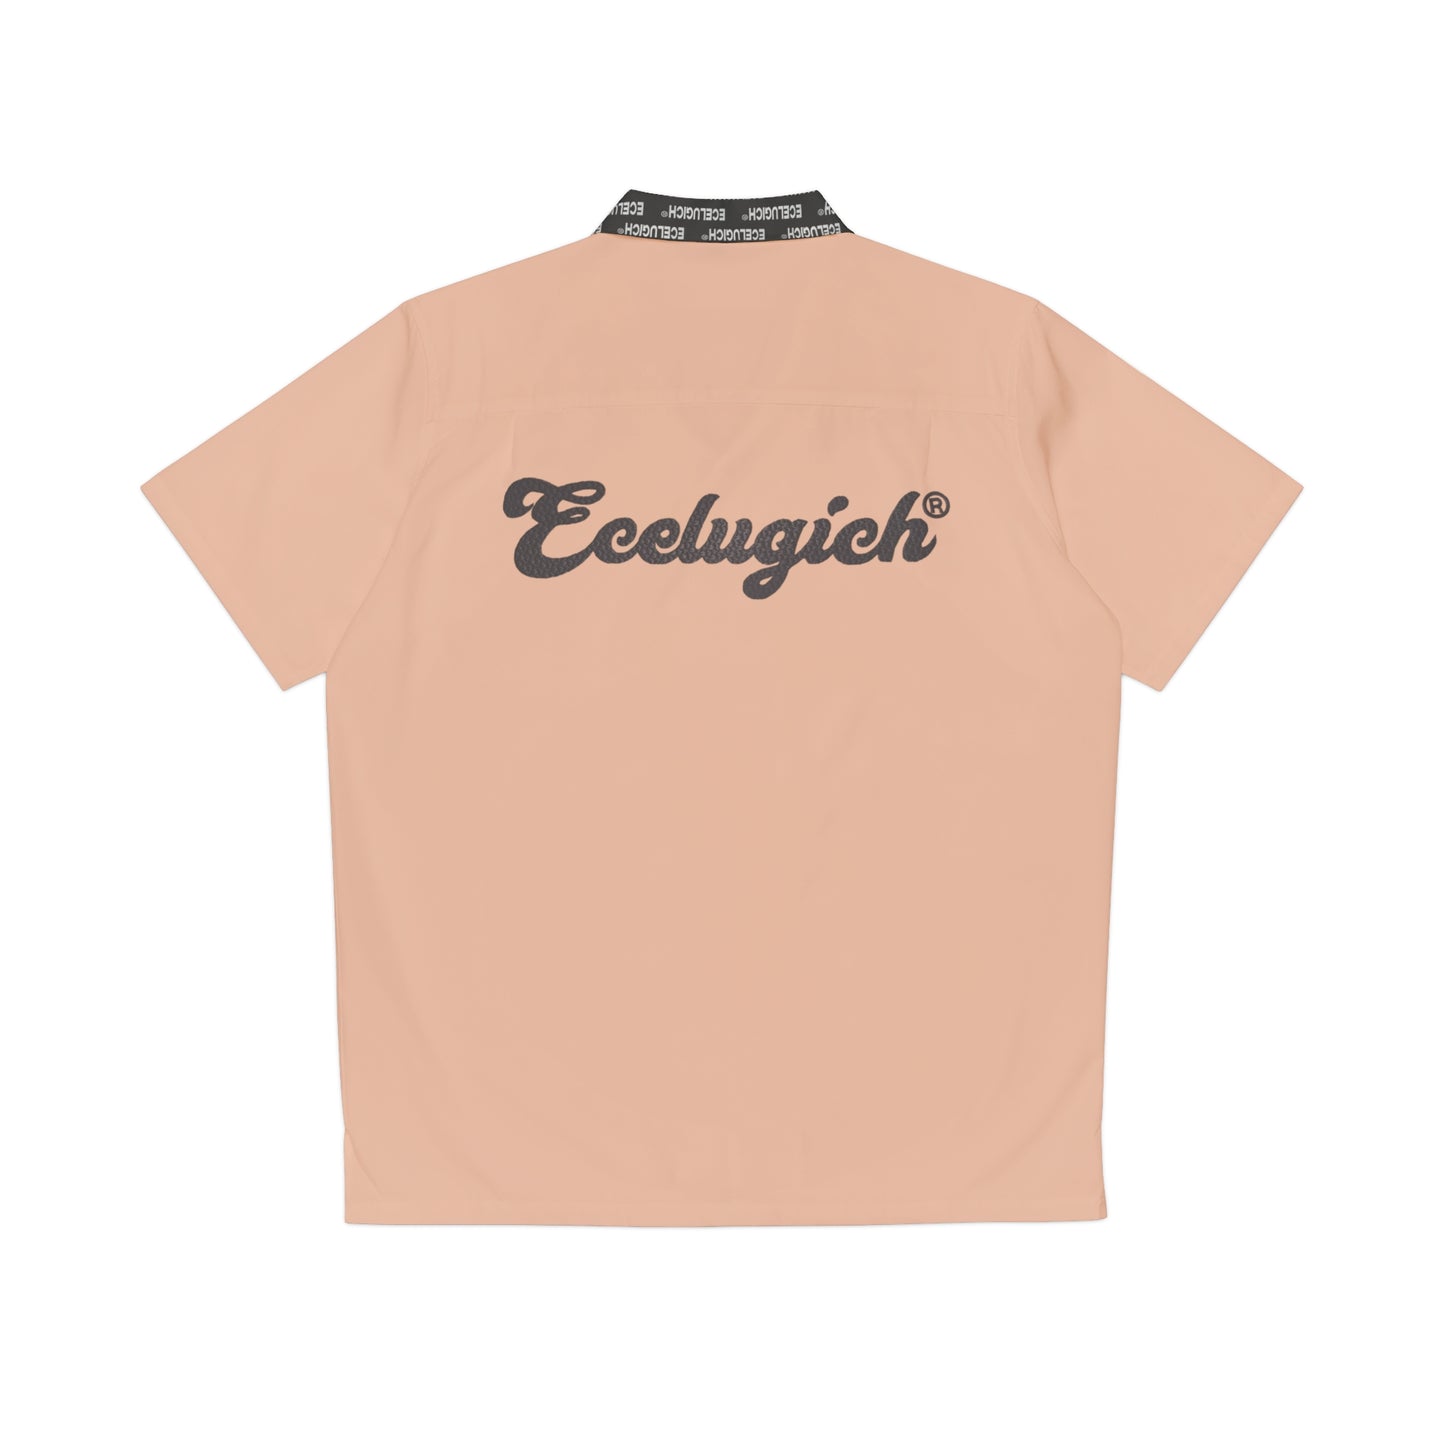 Ecelugich Men's Shirt